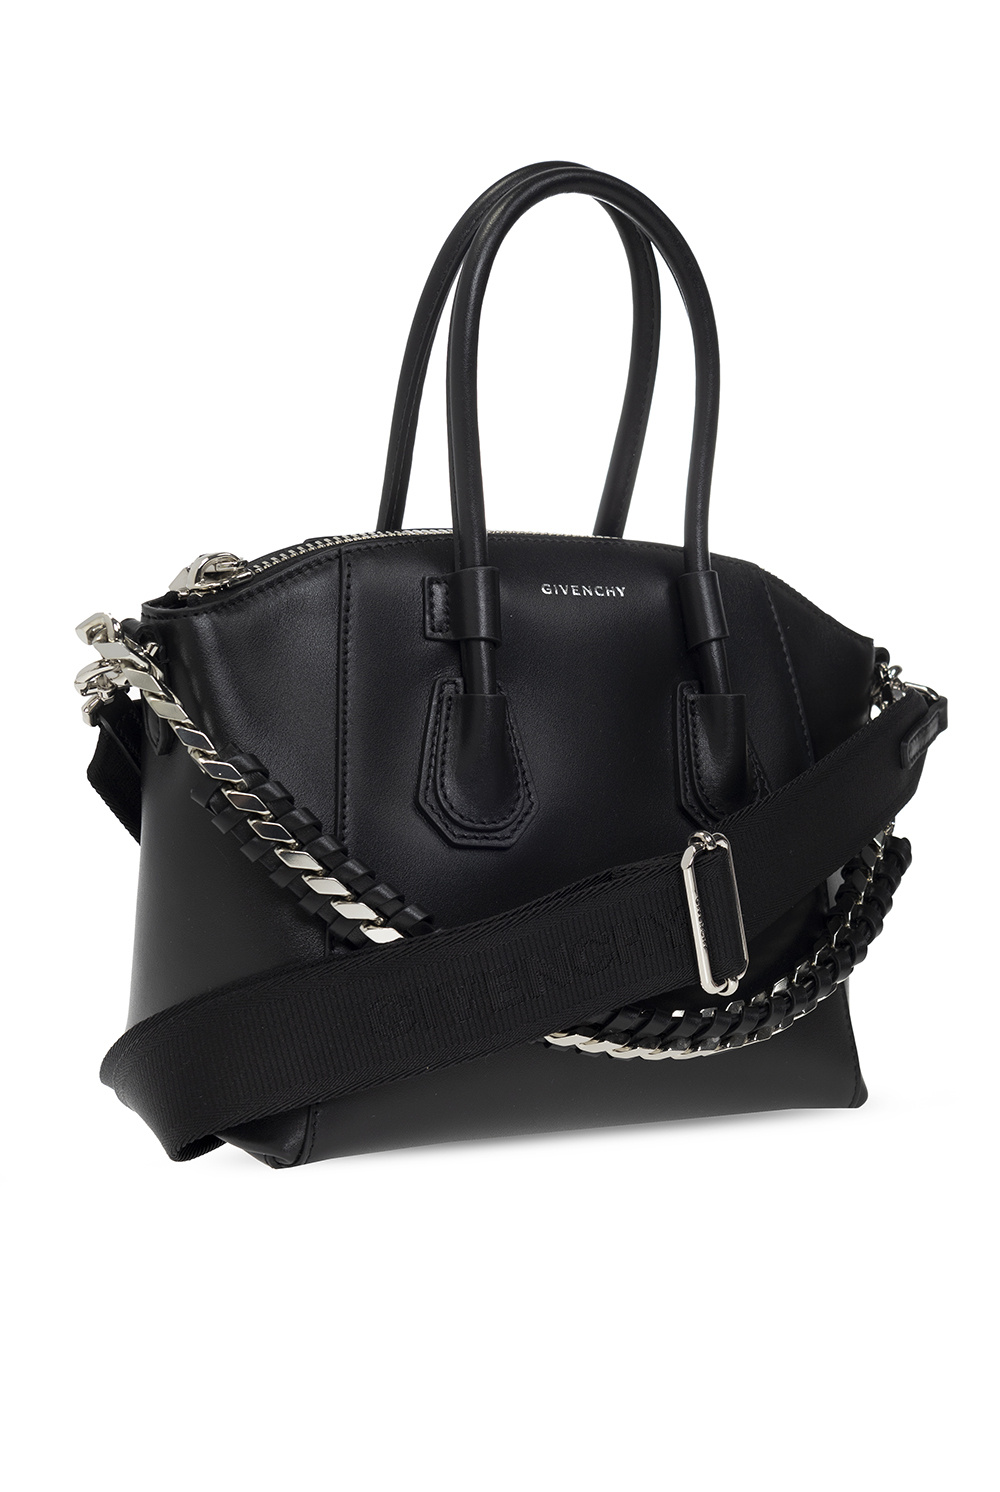 Givenchy ‘Anitigona Sport Mini’ shoulder bag